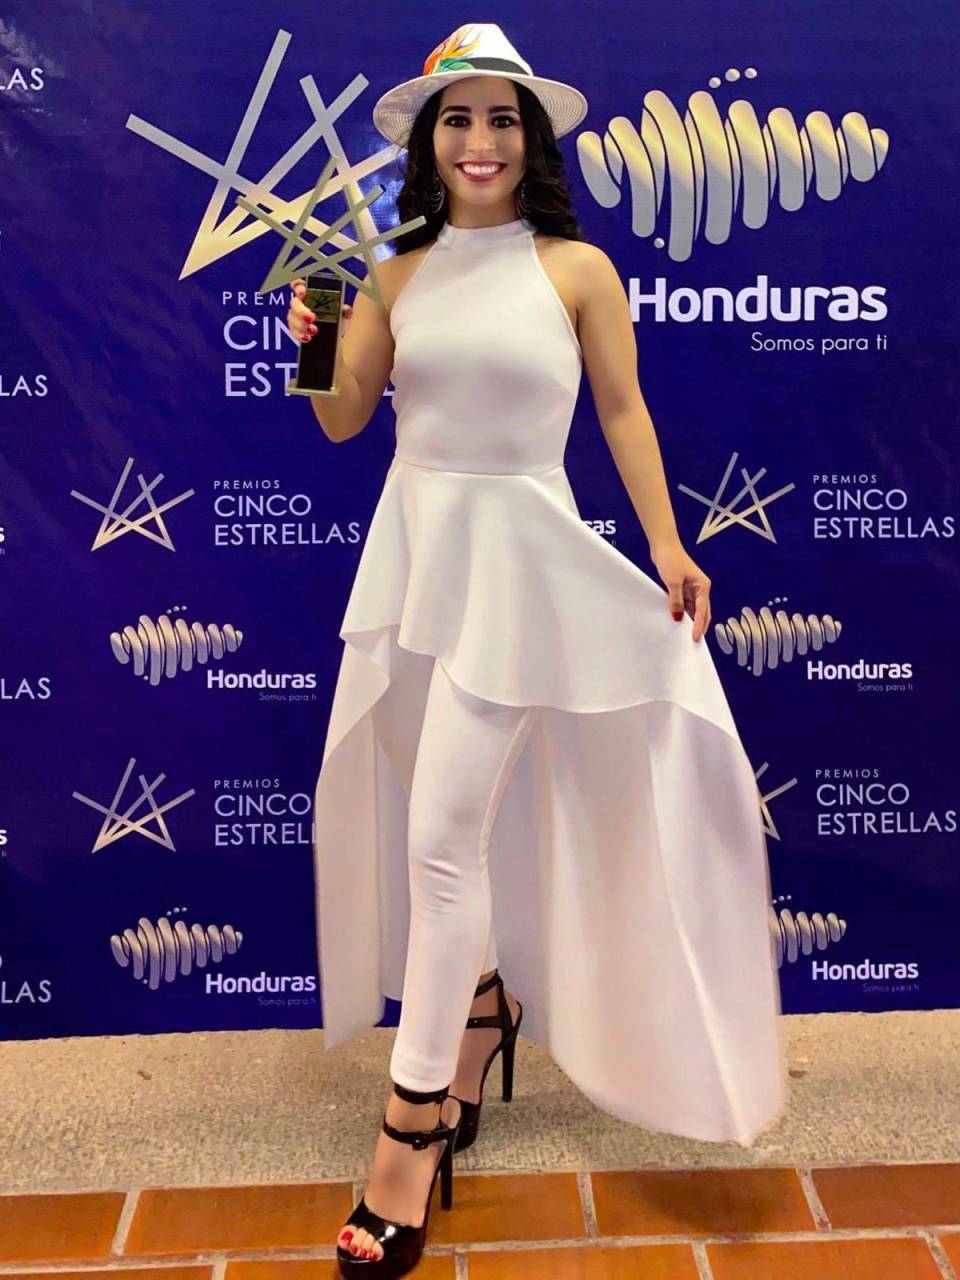 En la imagen para el recuerdo cuando fue nombrada “Mejor Atleta de Honduras 2021” por Marca País.